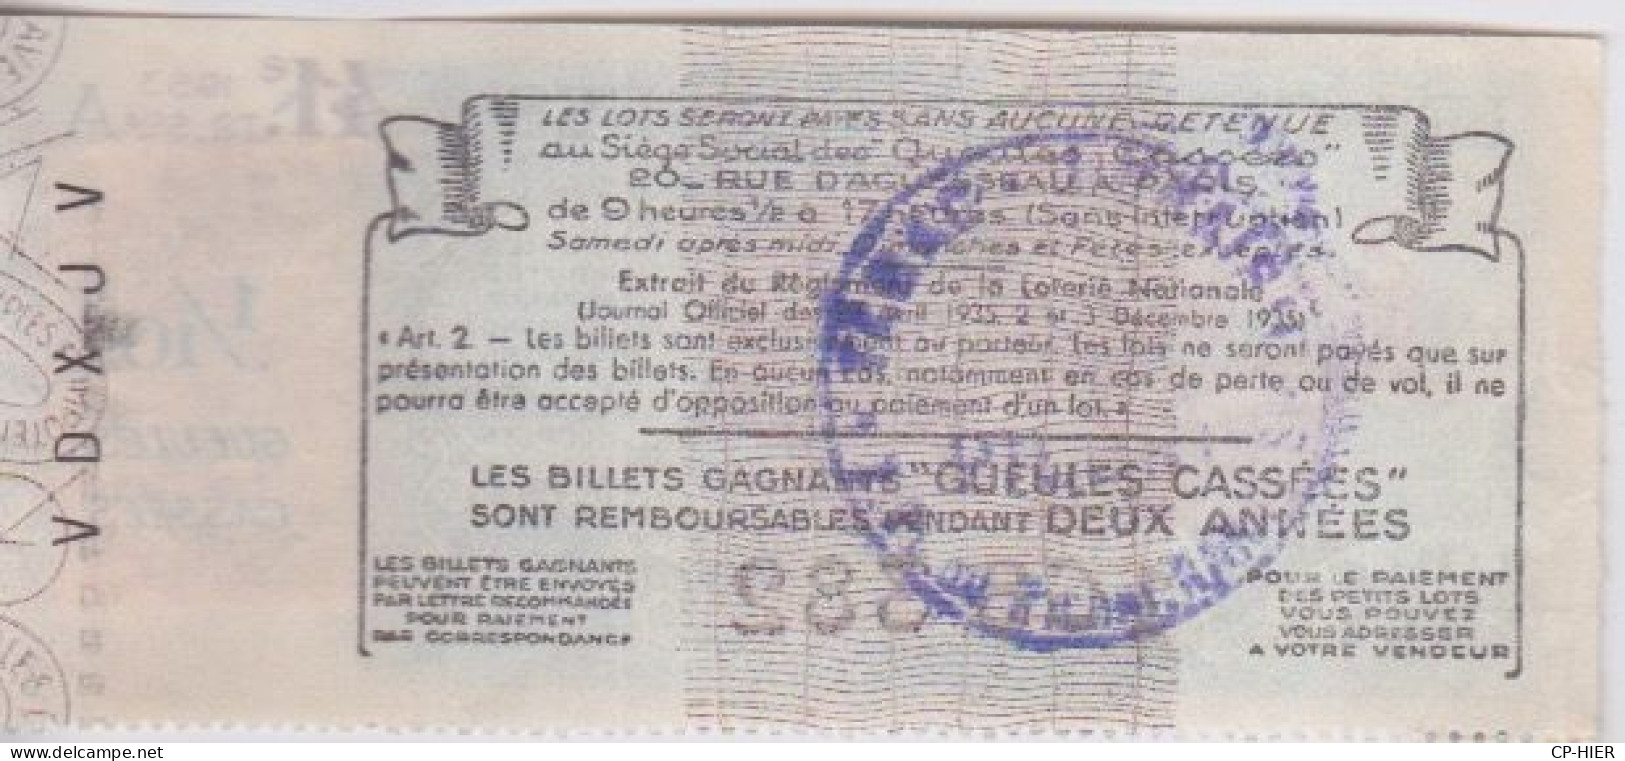 BILLET DE LOTERIE NATIONALE - LES GUEULES CASSEES - + VIGNETTE  1953 + CACHET AU DOS - Lottery Tickets